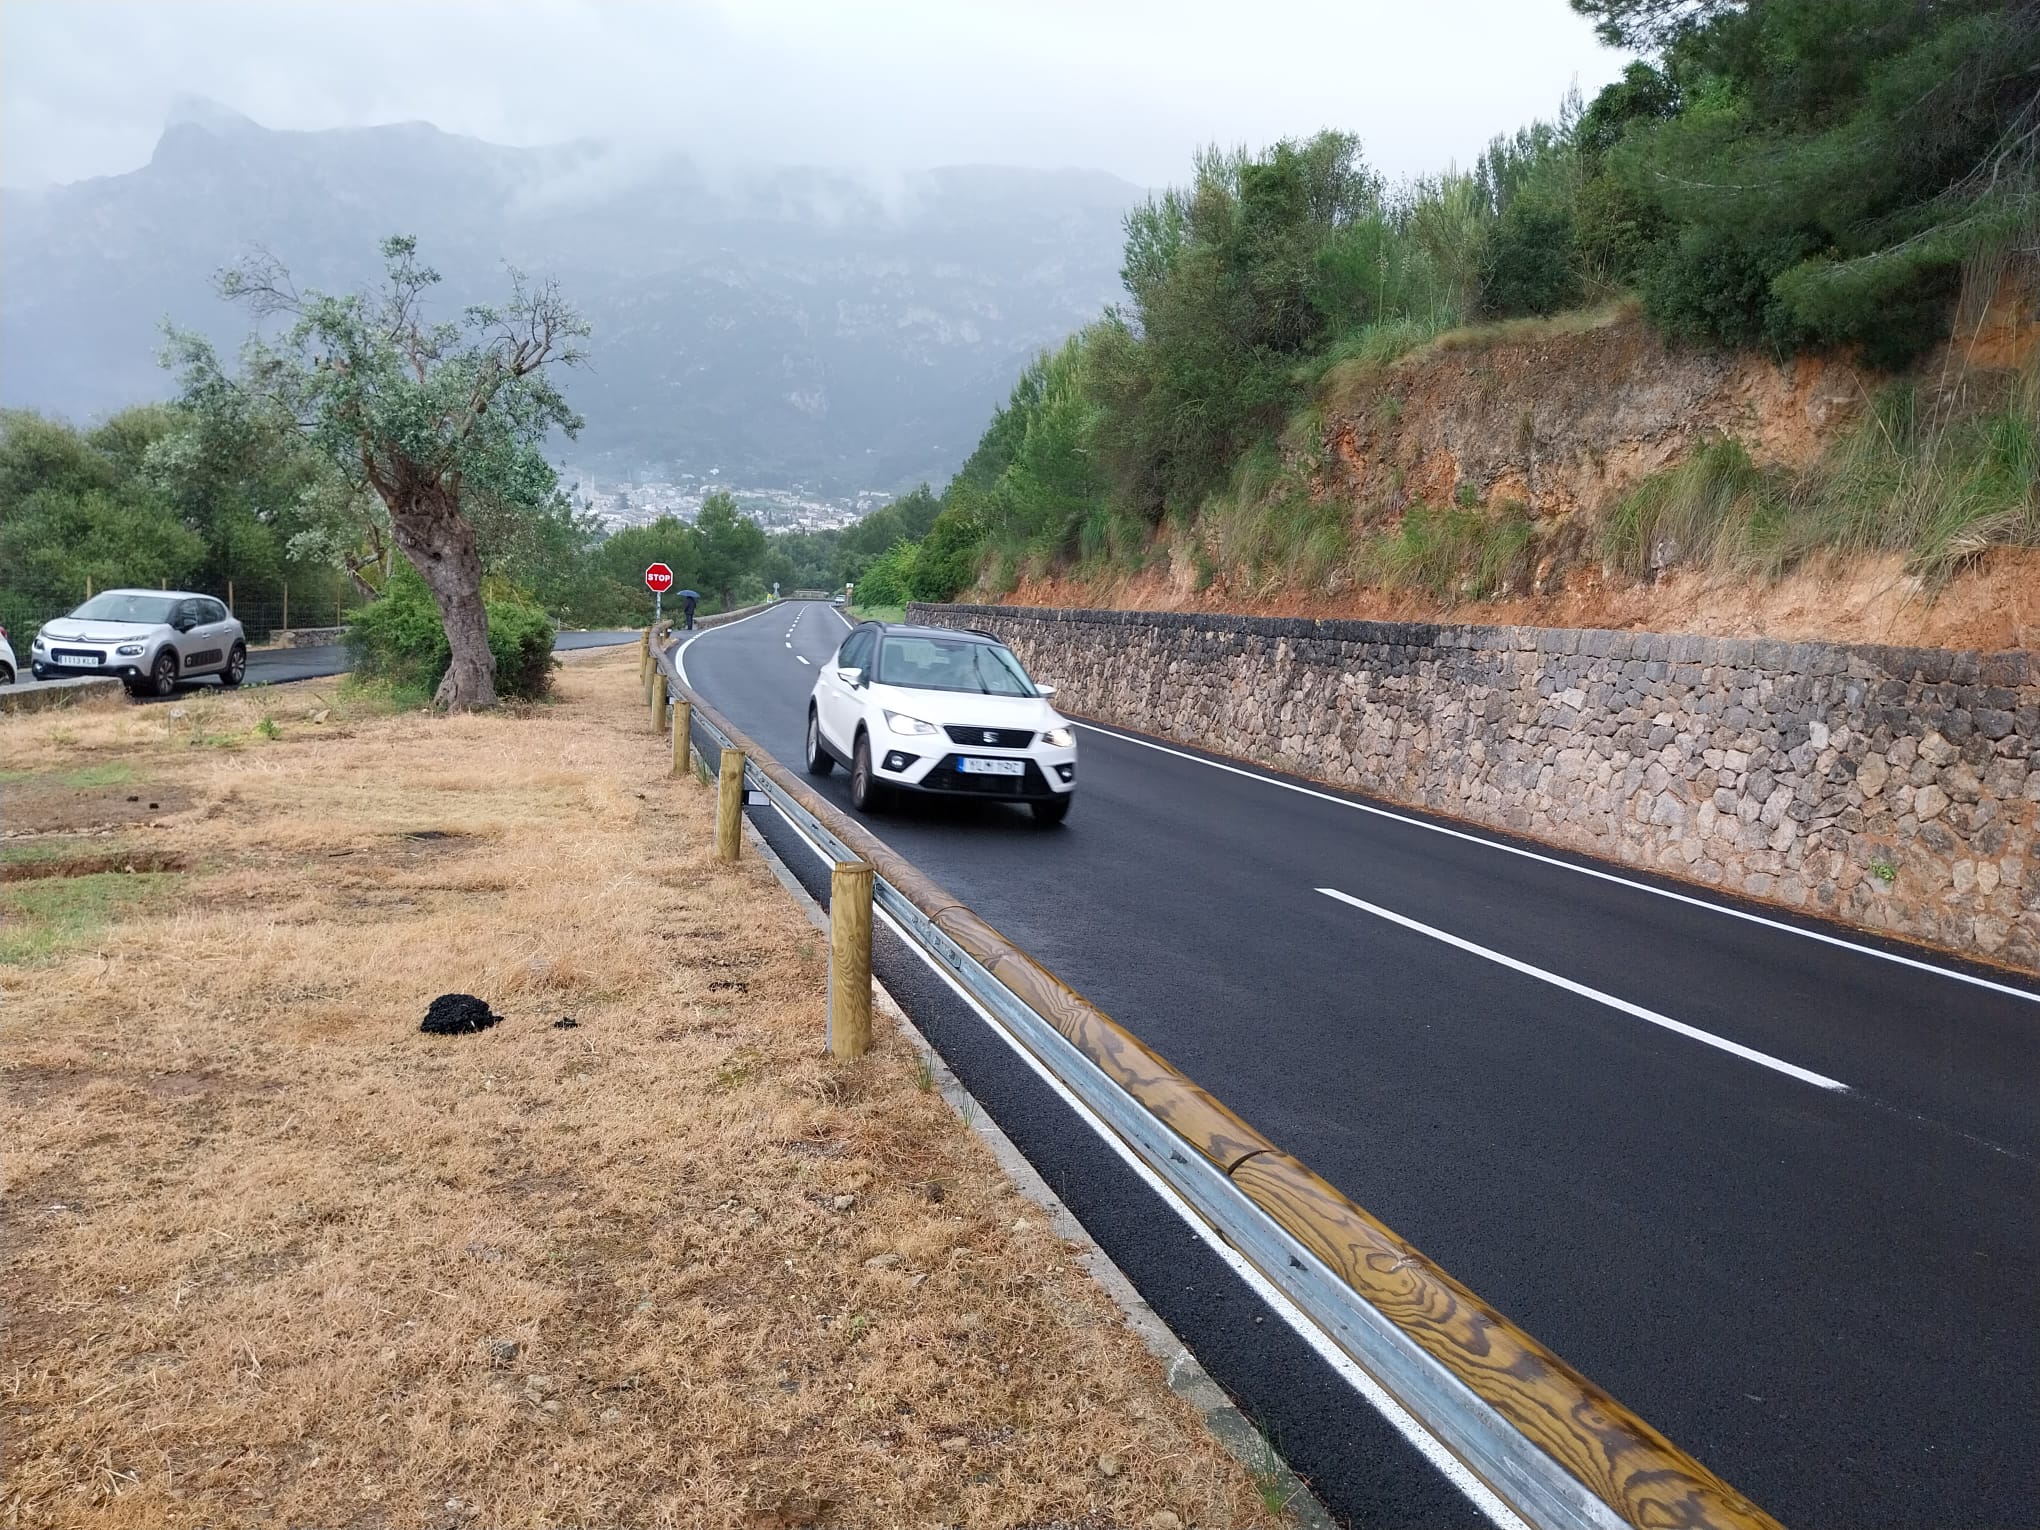 Imagen de la carretera Sóller-Llucalcari con las nuevas barreras de seguridad y asfaltado de alta calidad.